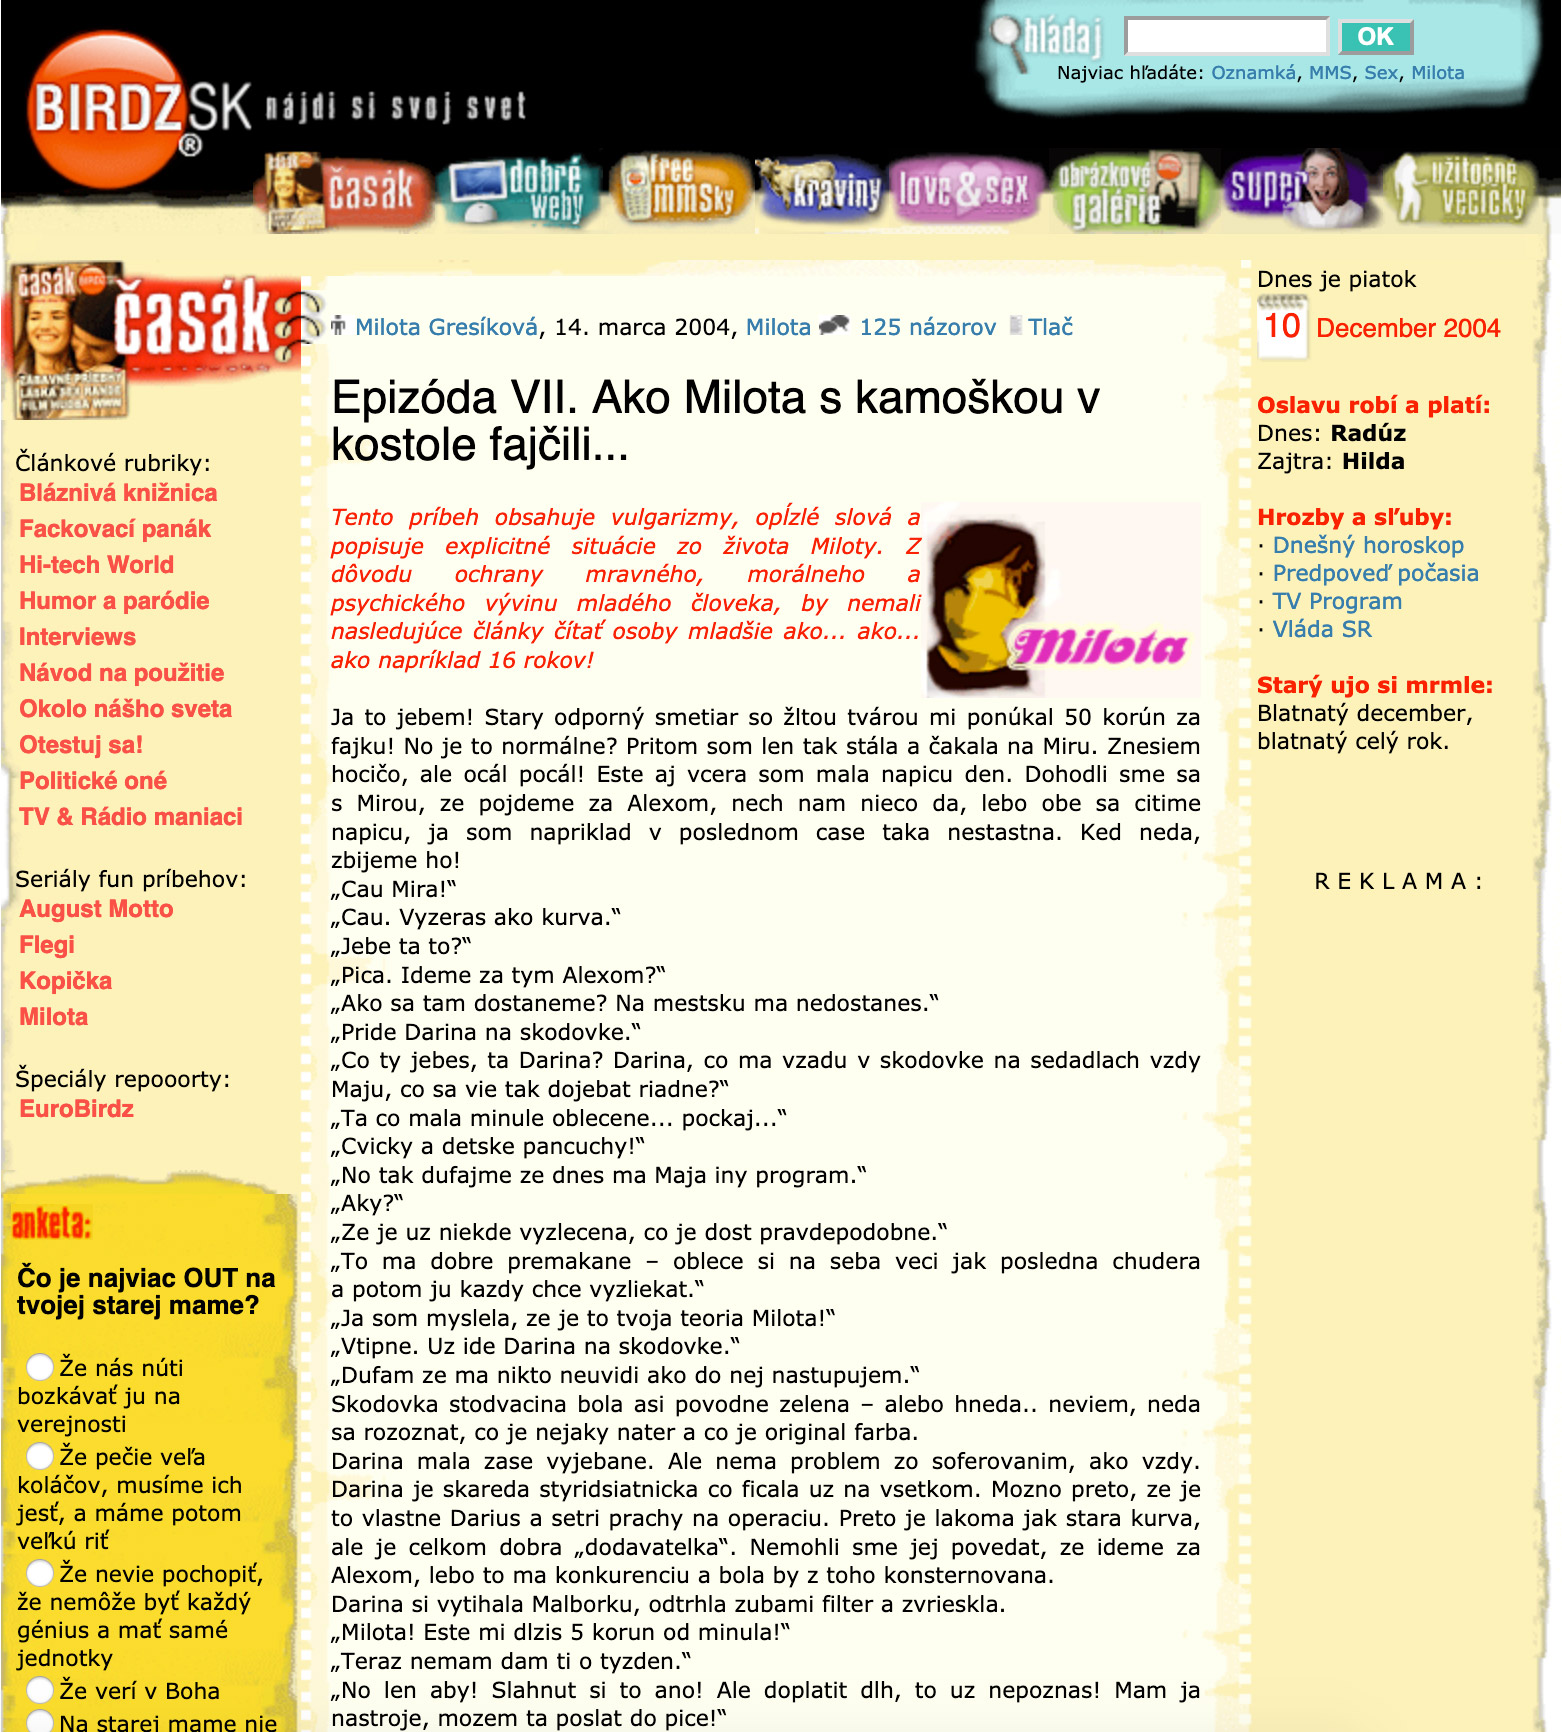 Ukážka článku na Birdz.sk v roku 2004